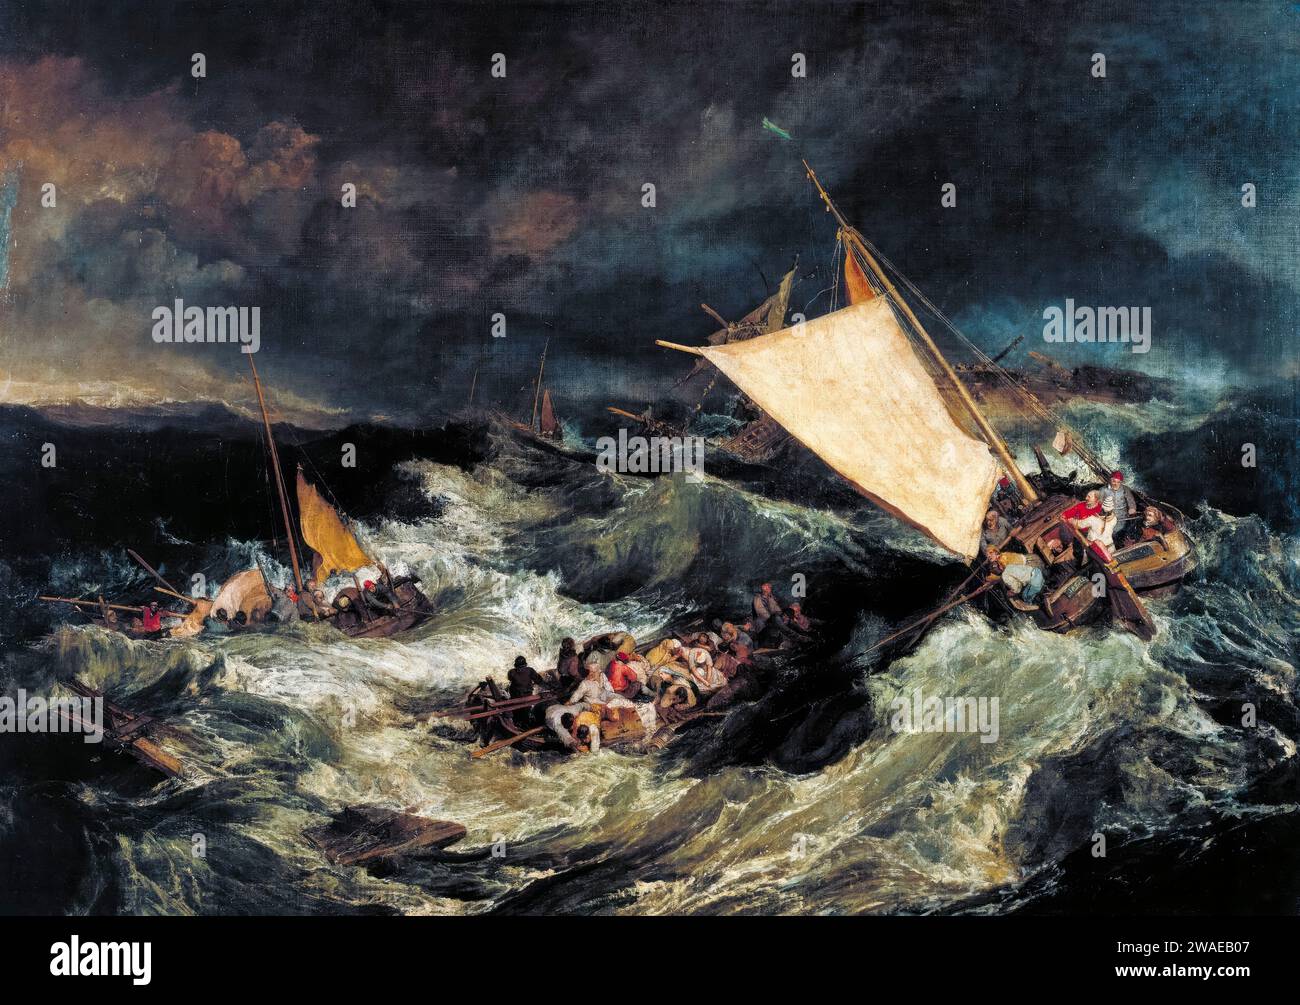 JMW Turner, The Shipwreck, peinture à l'huile sur toile, 1805 Banque D'Images